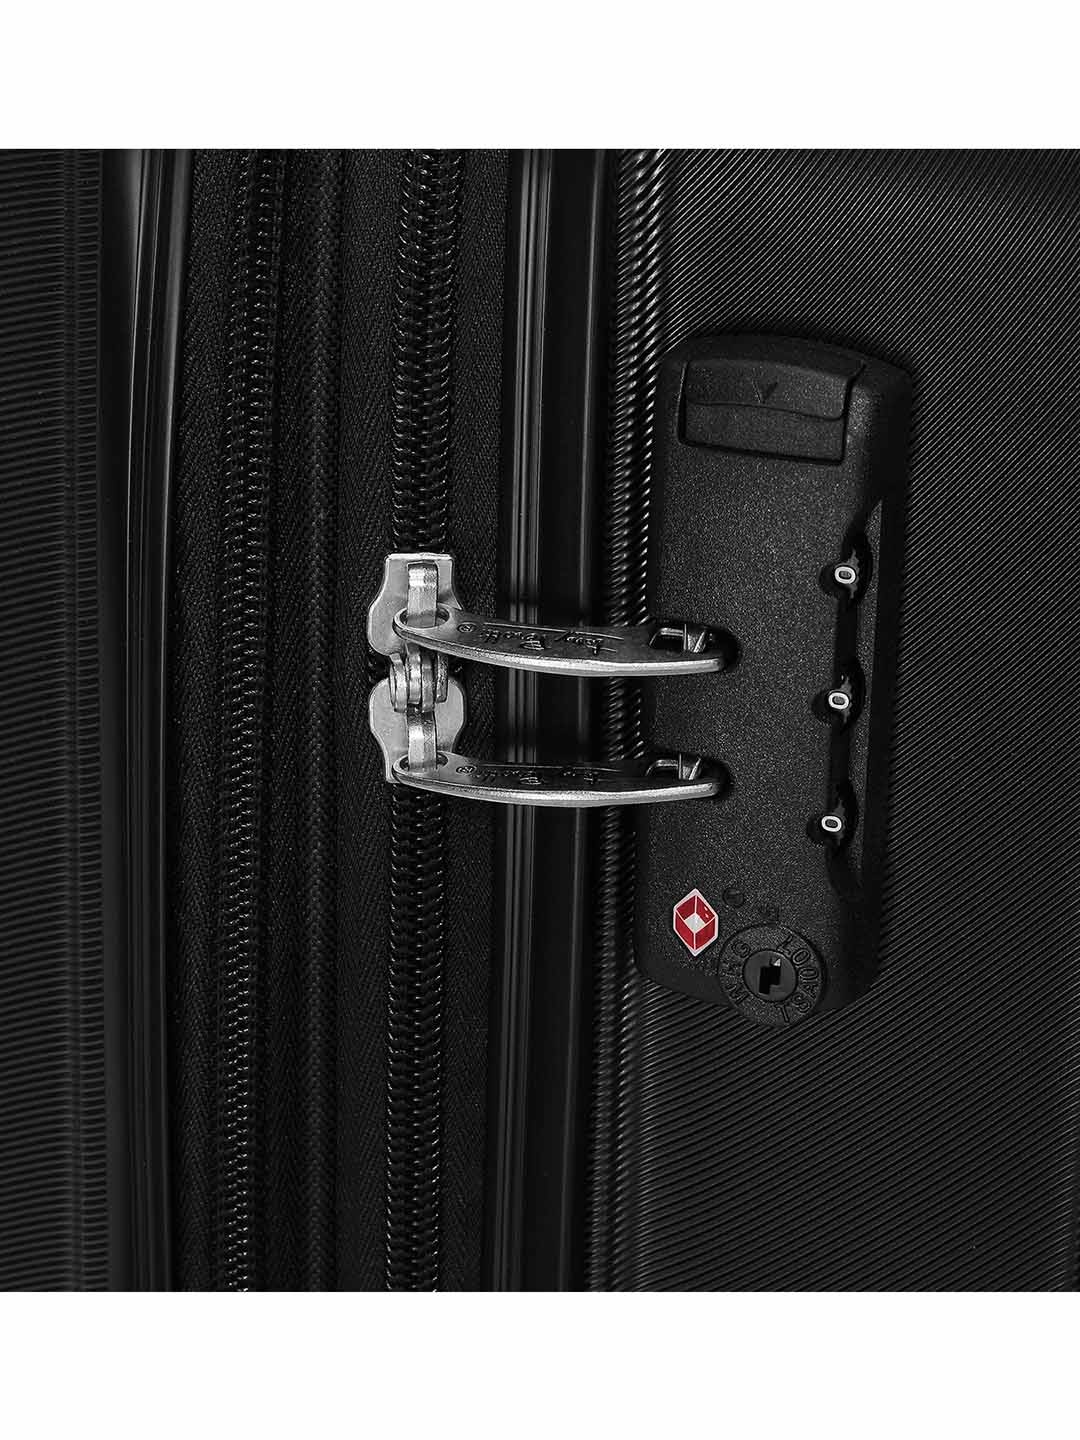 Фото Большой чемодан на колесах из рифленого ABS пластика черного цвета Чемоданы